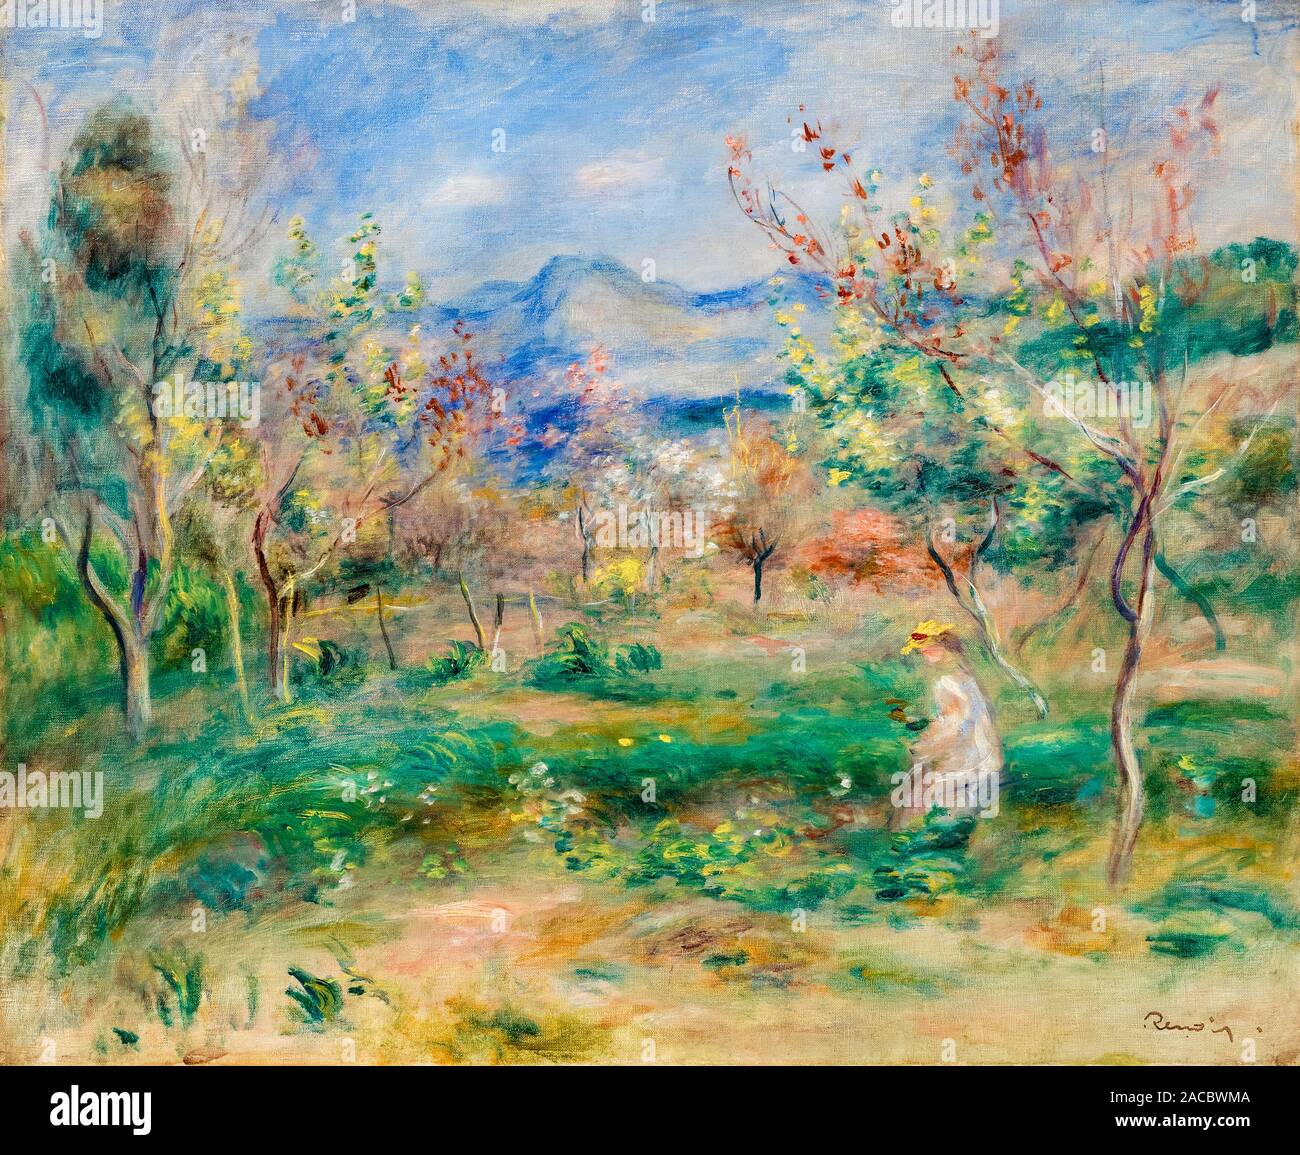 Pierre Auguste Renoir, Paysage, (Paysage), la peinture de paysages, 1900-1905 Banque D'Images